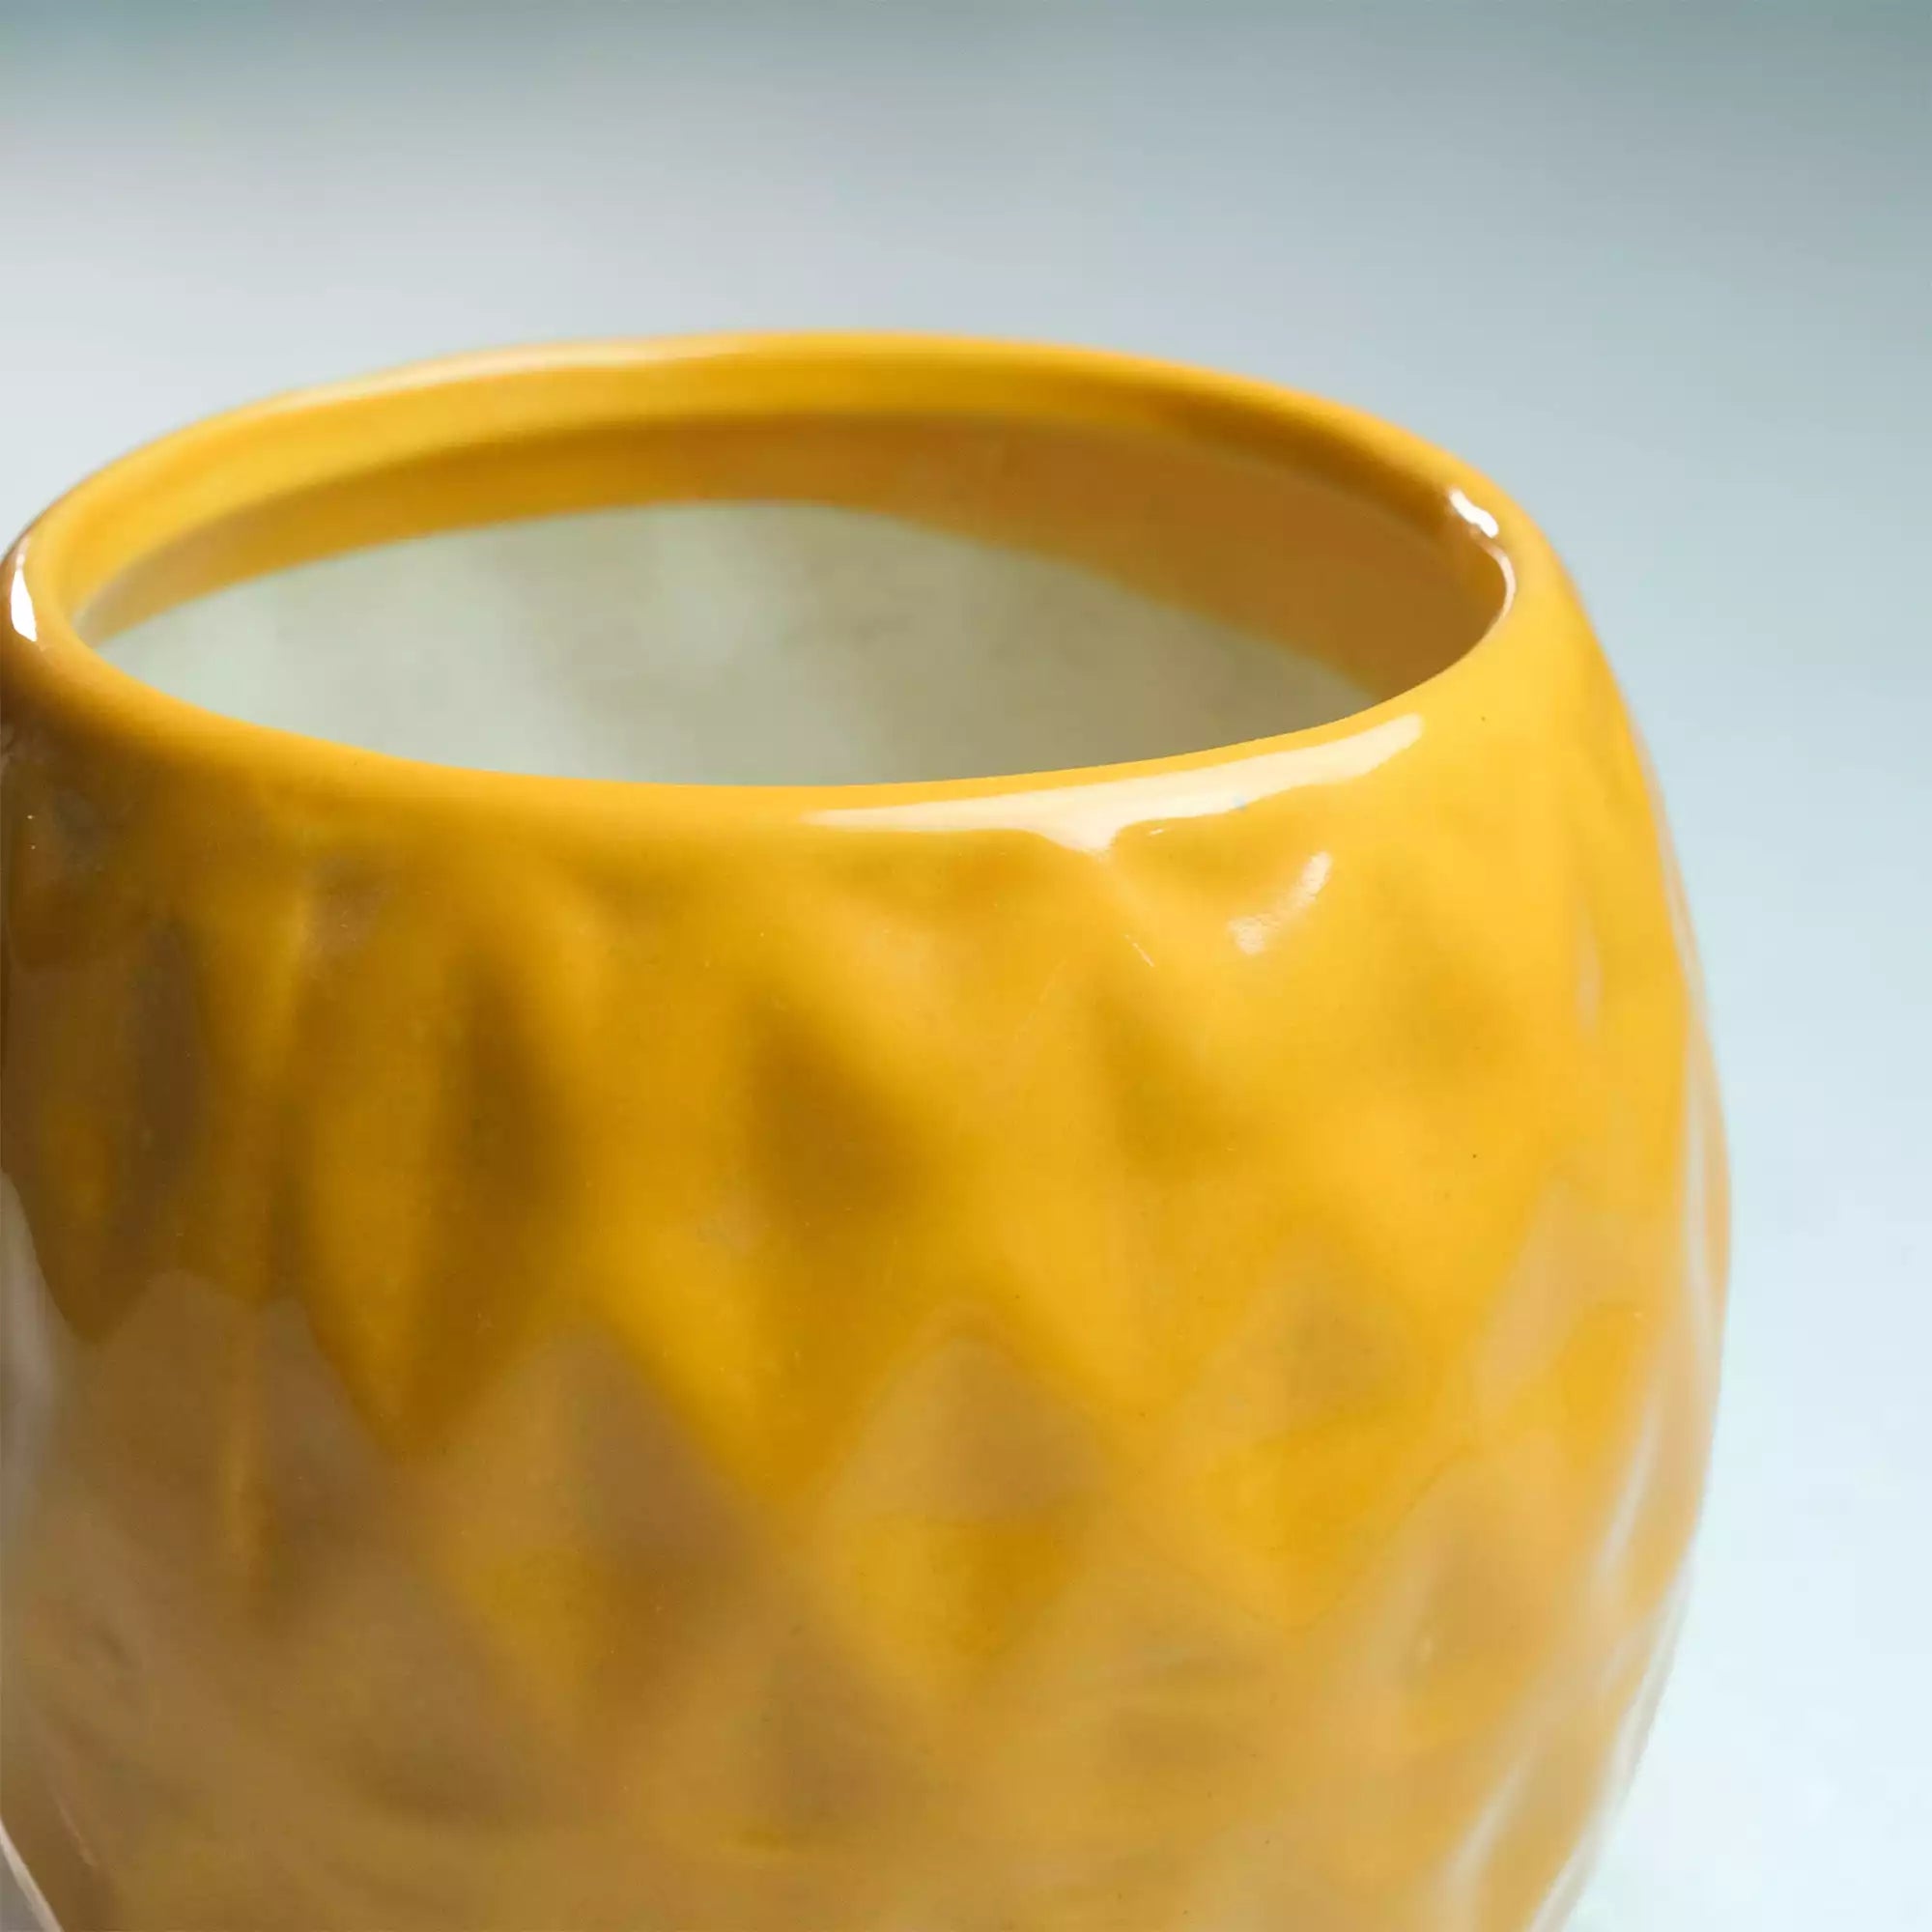 Honeycomb Ceramic Pot